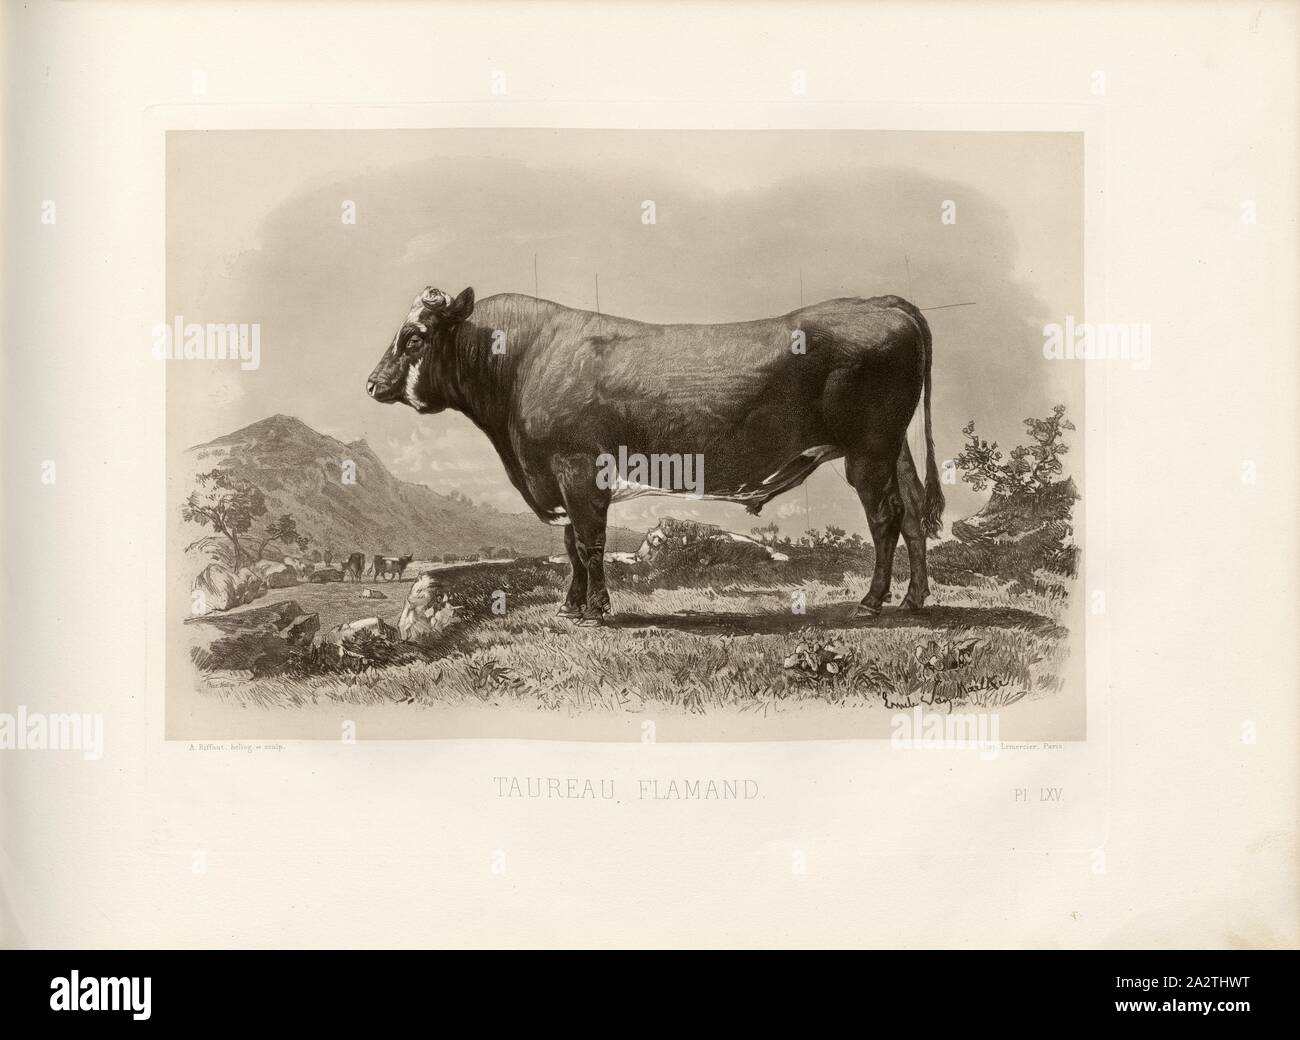 Flemish bull, French cattle breed, bull, signed: Phot., Nadar, Emile Van Marcke; A. Riffaut heliog., et sculp, Pl. LXV, S. 149, Tournachon, Adrien Alban (Phot.); Marcke, Emile van; Riffaut, A. (heliog. et sc.), Emile Baudement: Les races bovines au concours universel agricole de Paris en 1856: études zootechniques. Bd. 2. Paris: Imprimerie Impériale, MDCCCLXI [1861 Stock Photo